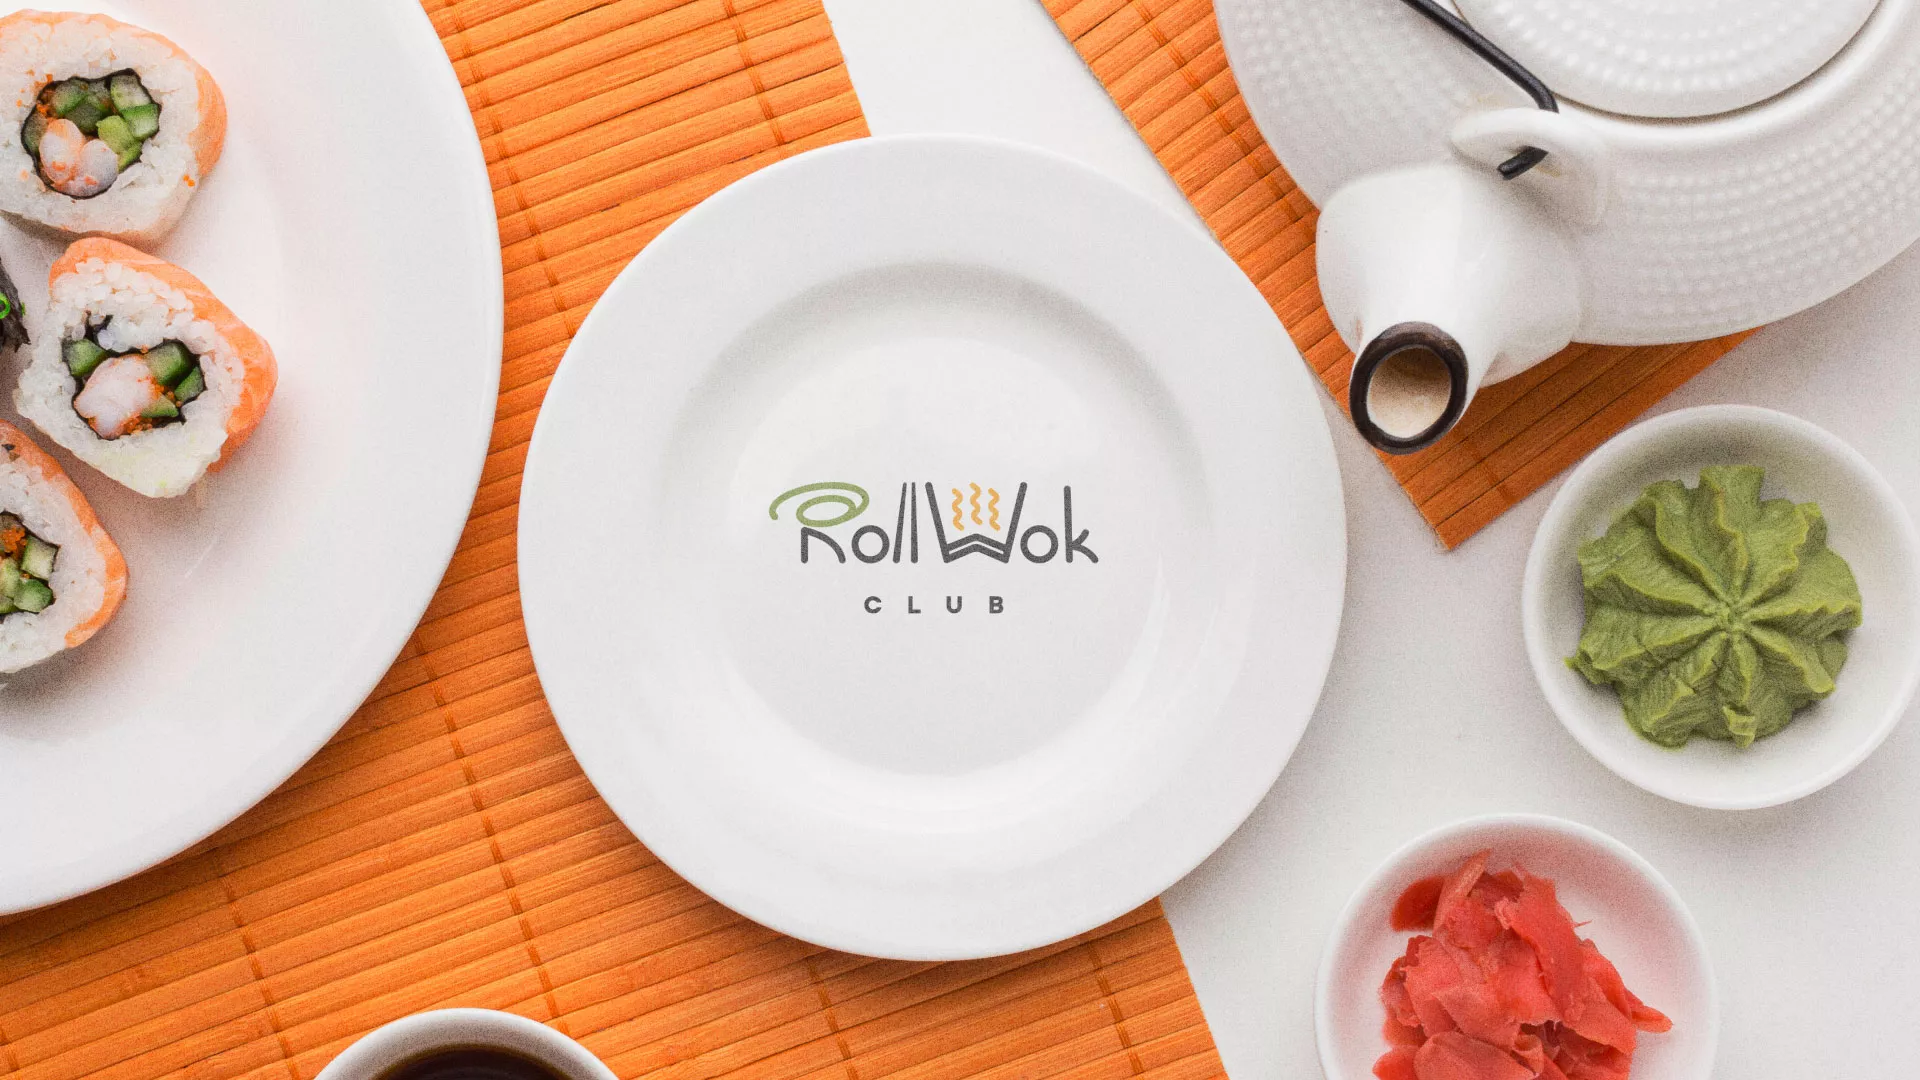 Разработка логотипа и фирменного стиля суши-бара «Roll Wok Club» в Чекалине